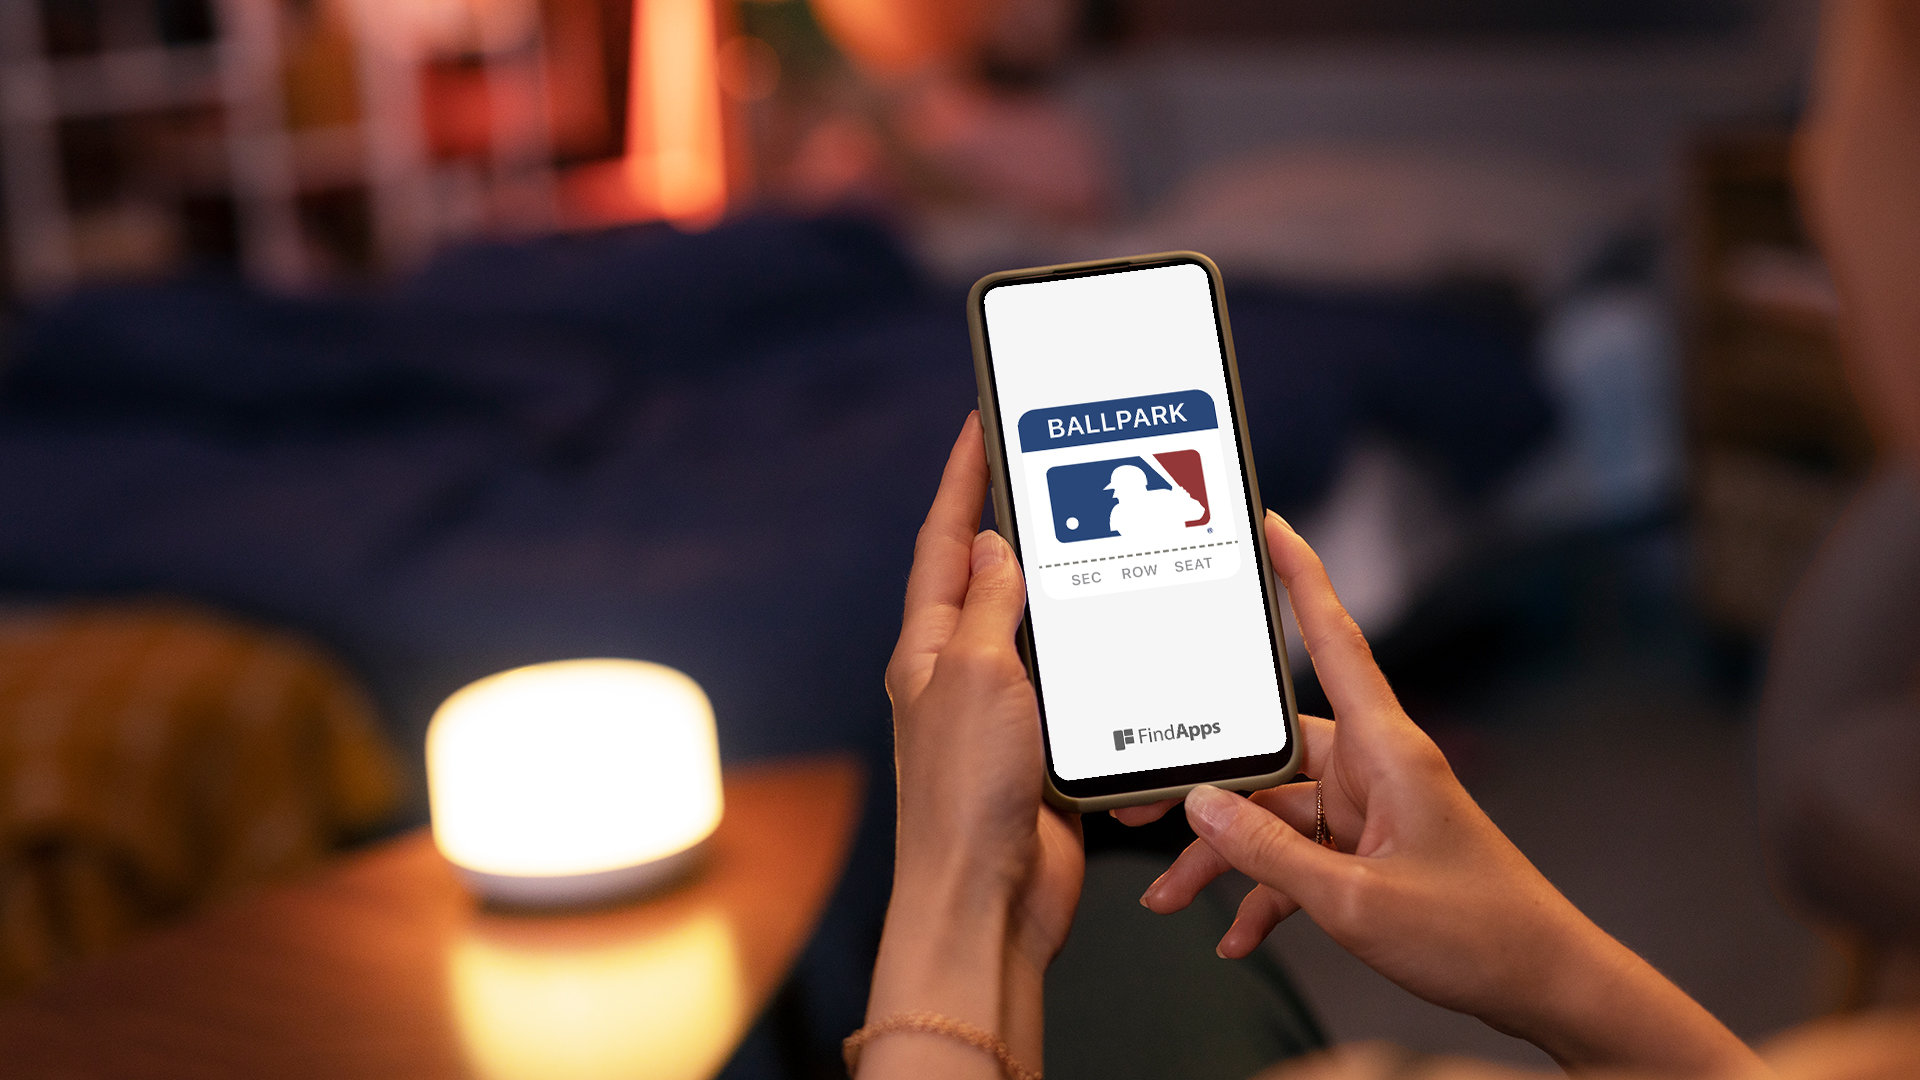 Mlb Ballpark app, review